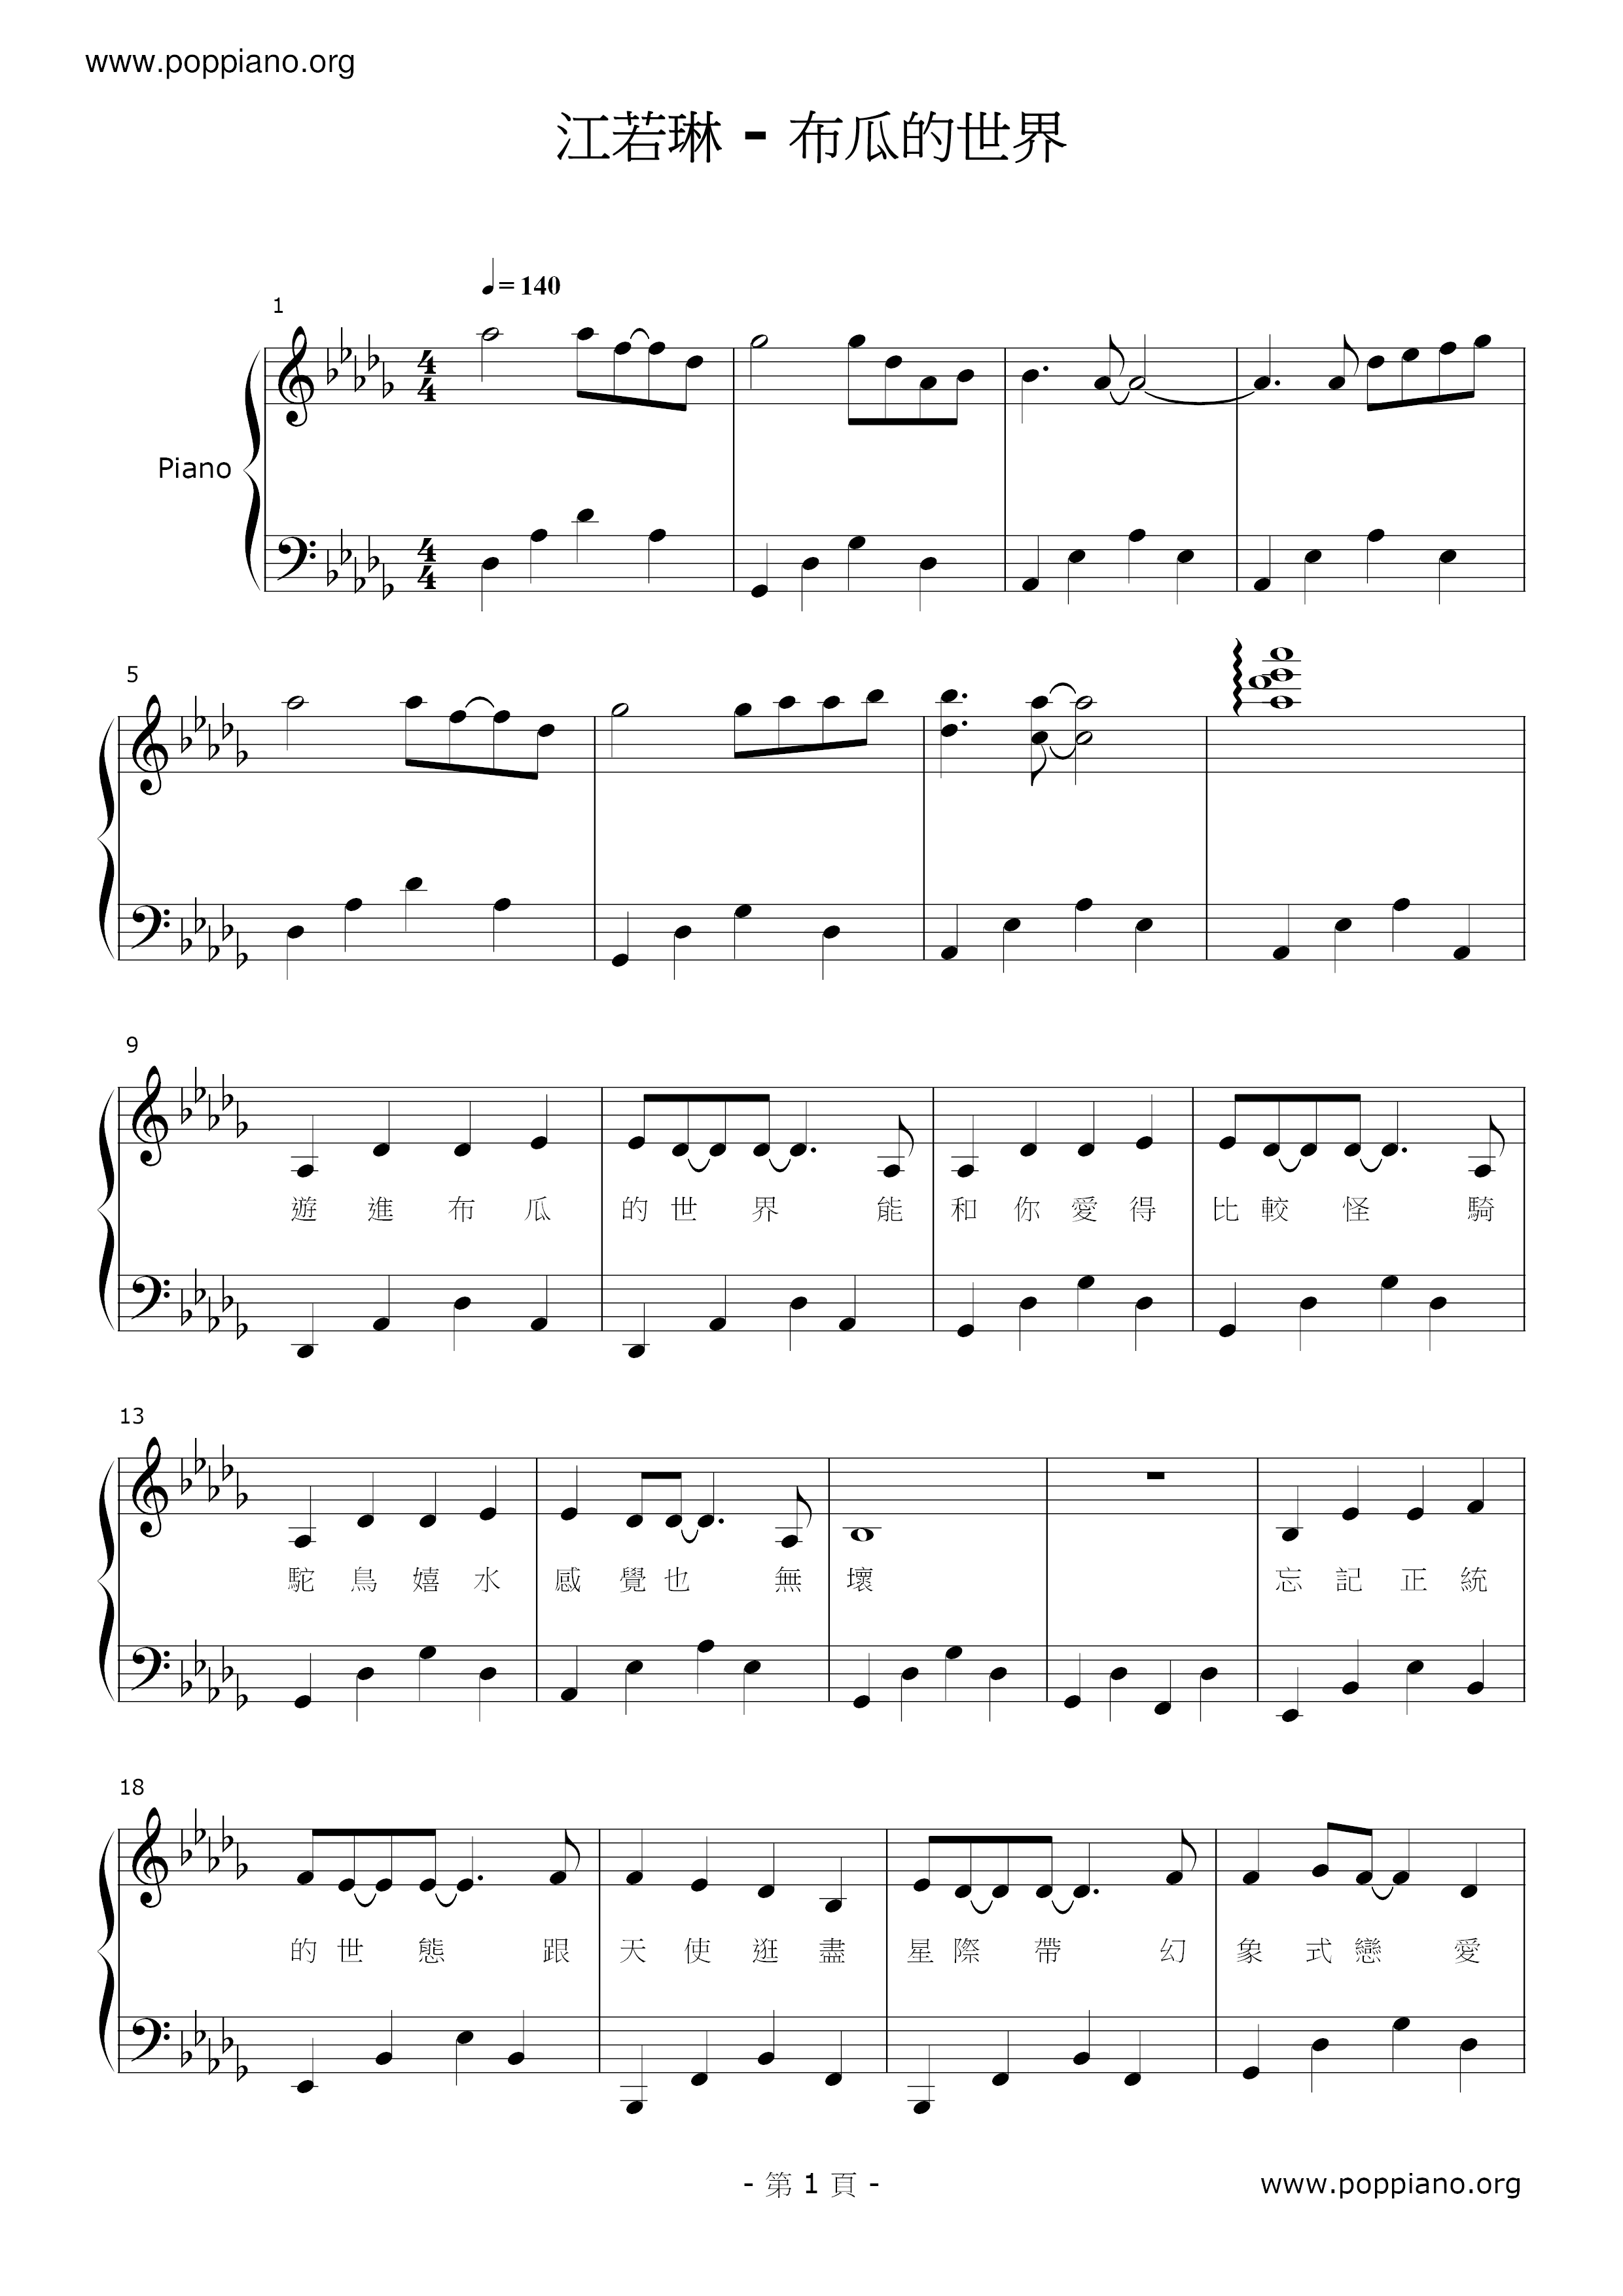 布瓜的世界琴谱